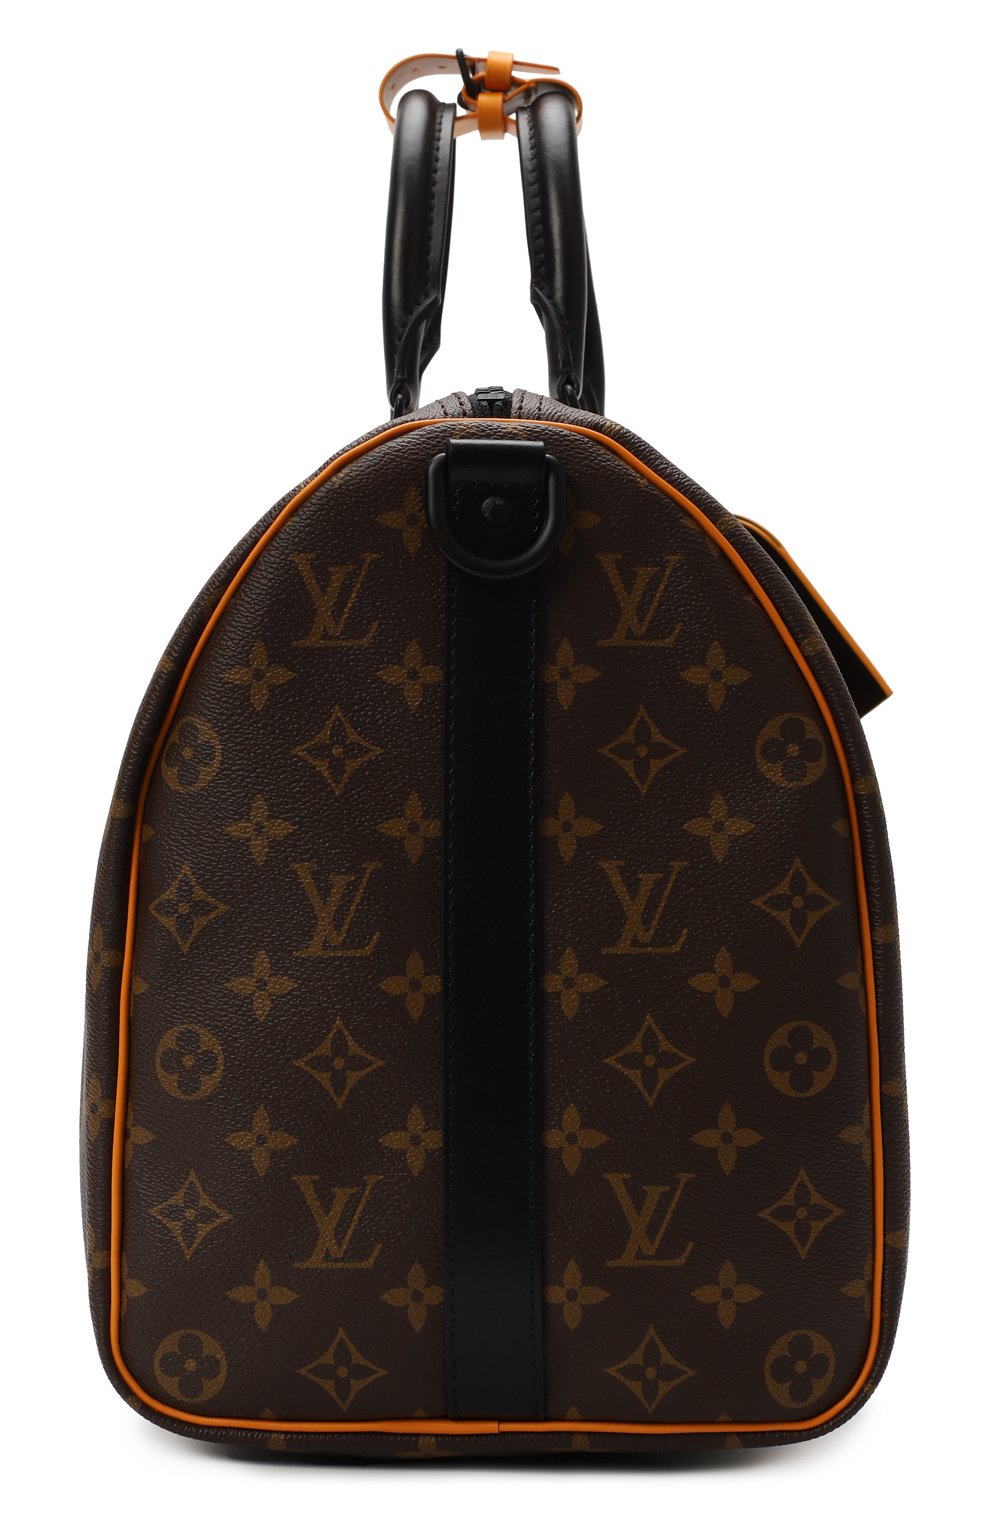 Дорожная сумка Keepall Bandoulière 45 | Louis Vuitton | Коричневый - 4